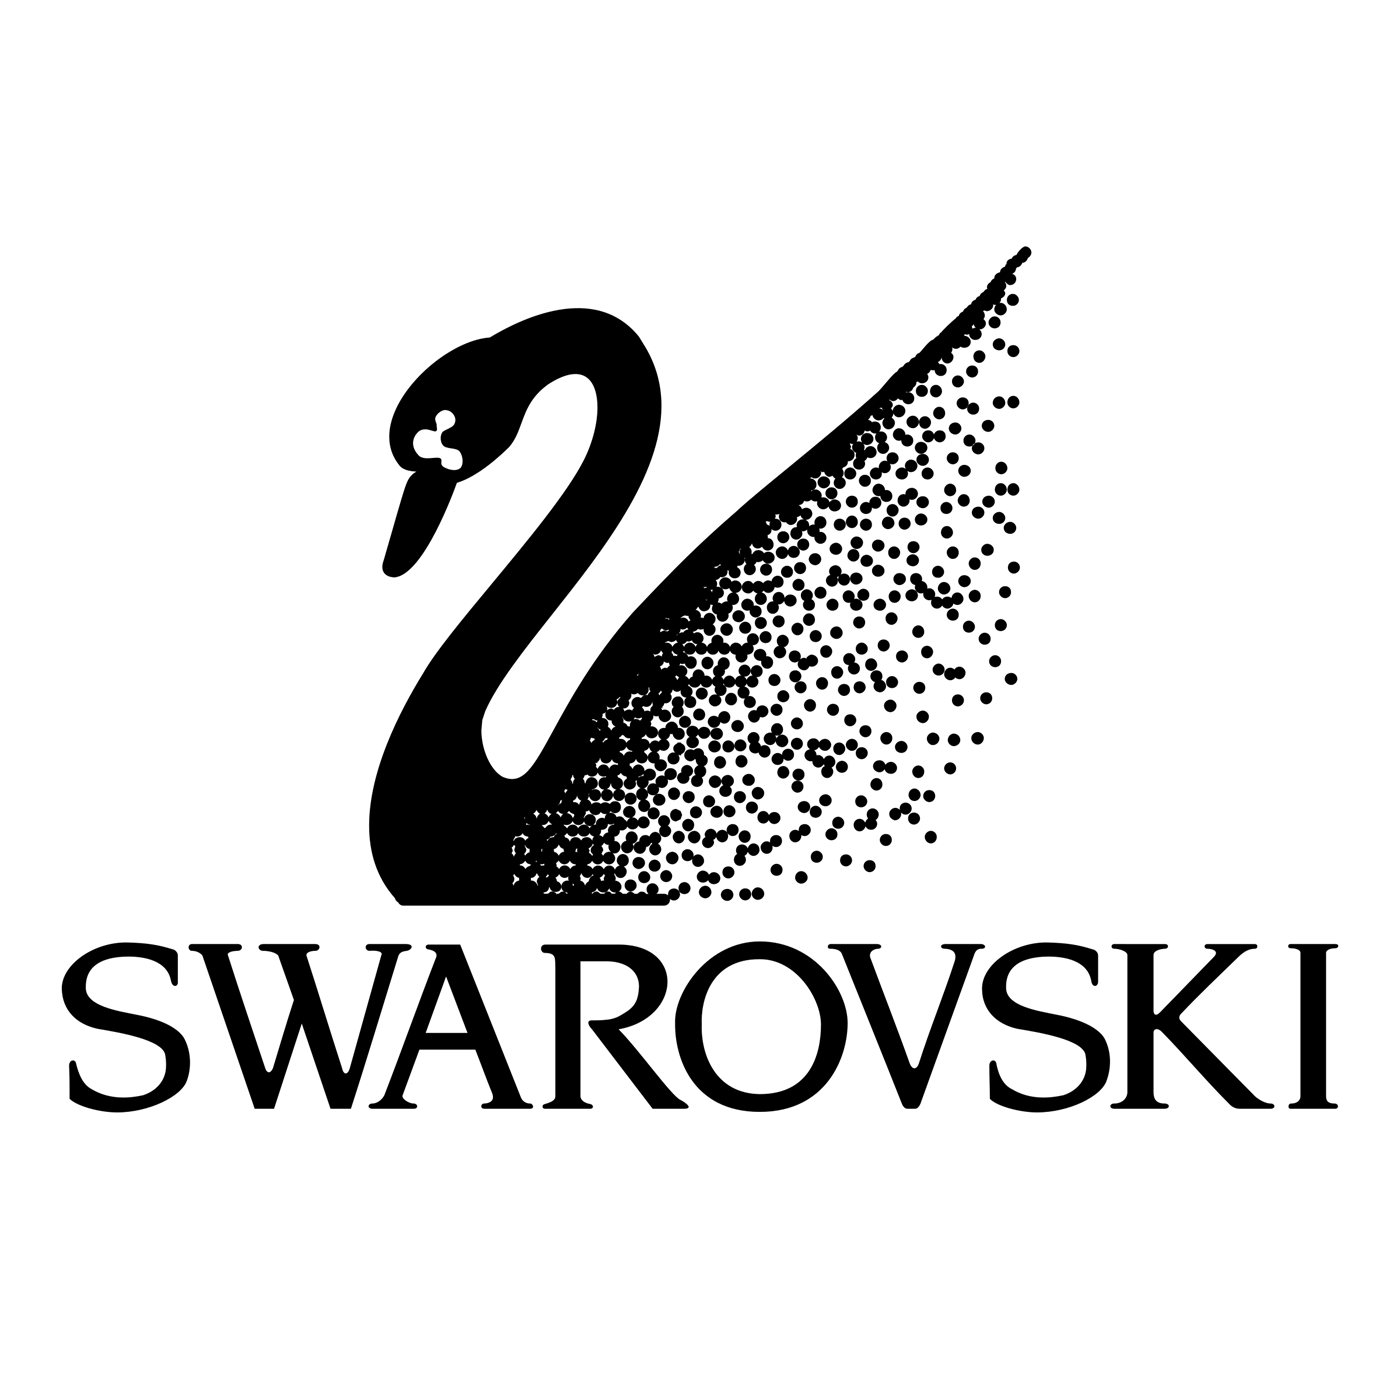 swarovski-1-logo-png-transparent.png